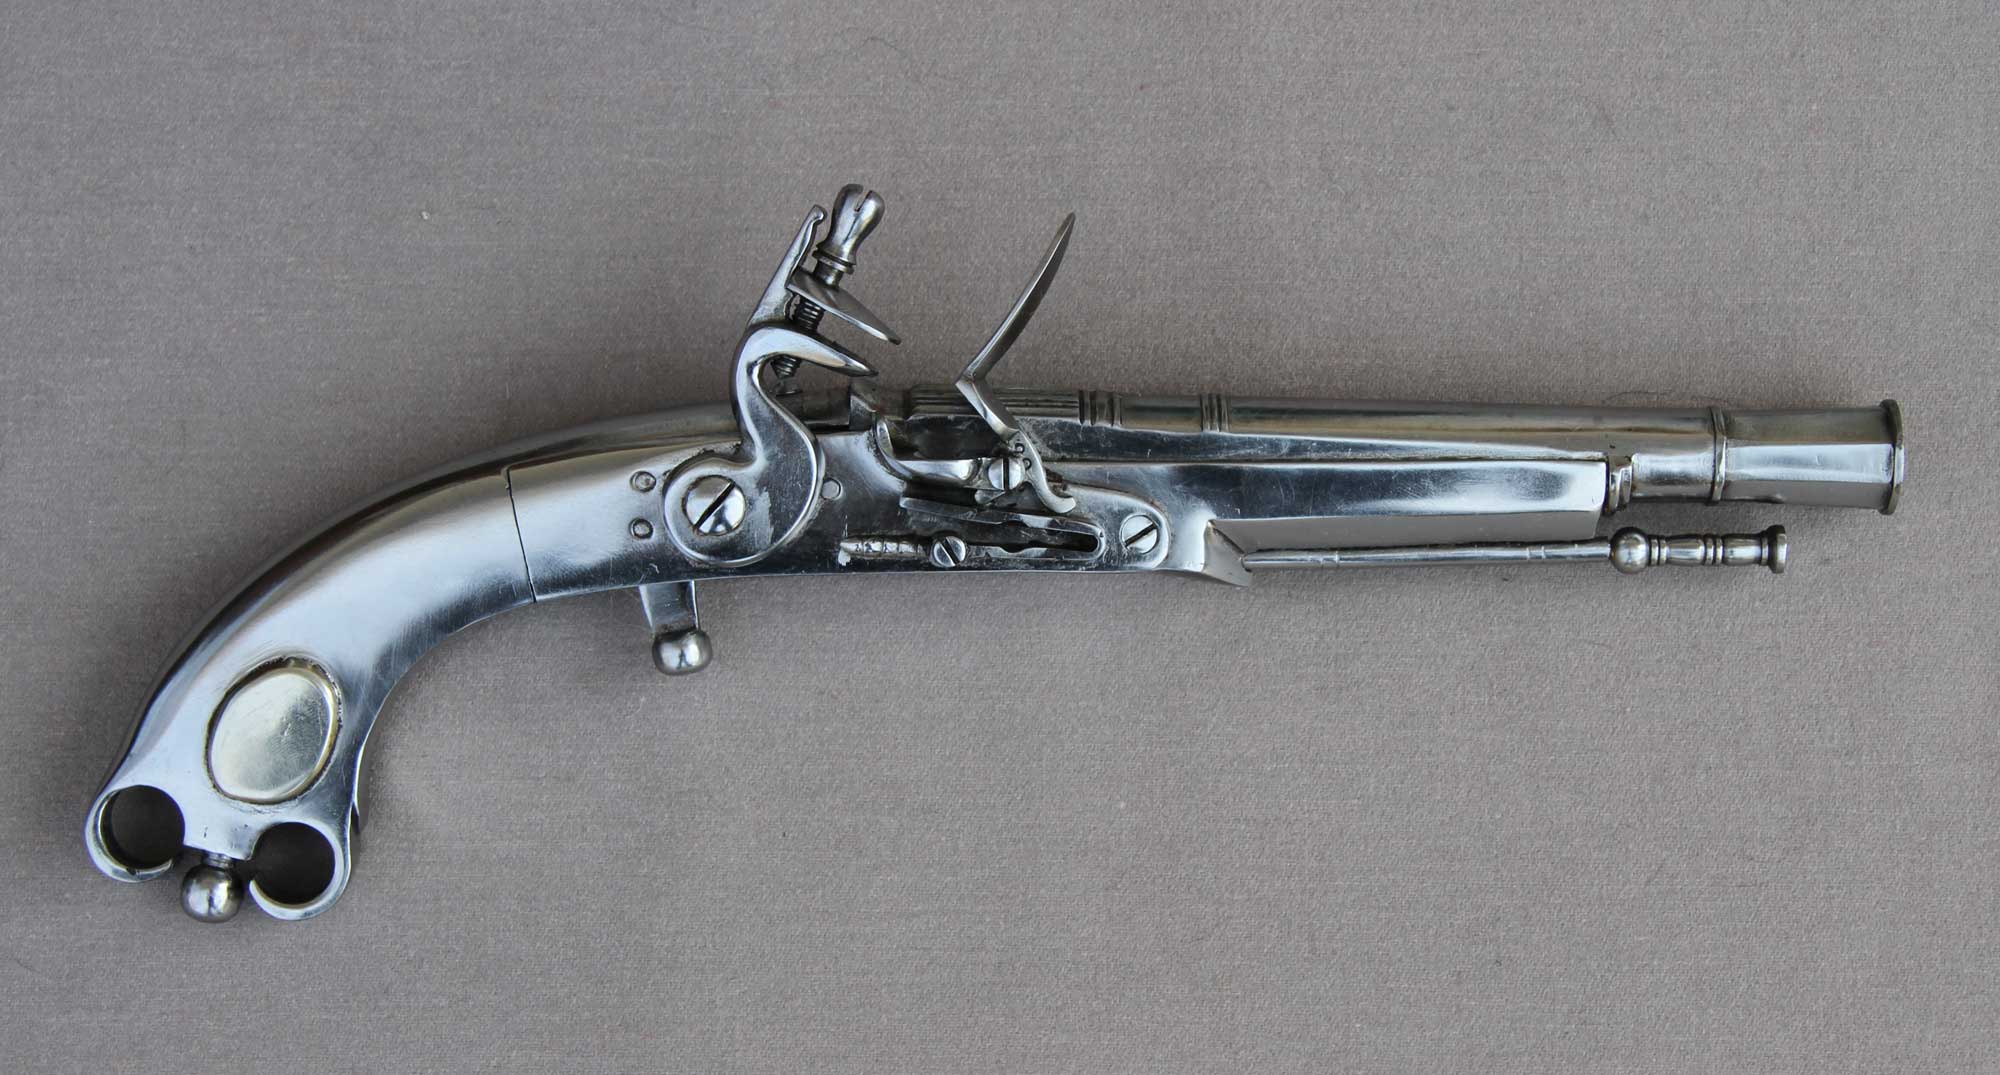 British, Murdock pistol (Scottish Highland)